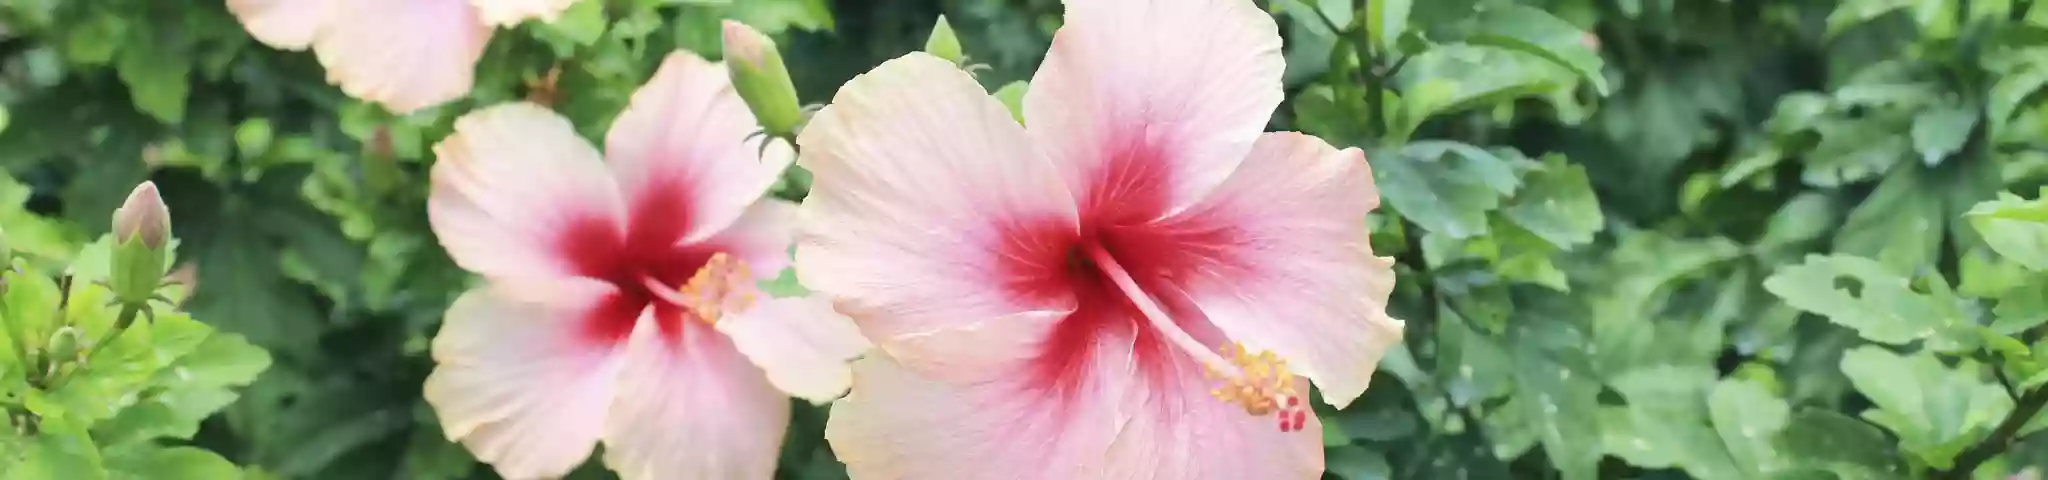 Hibiscus Flower in Garden 